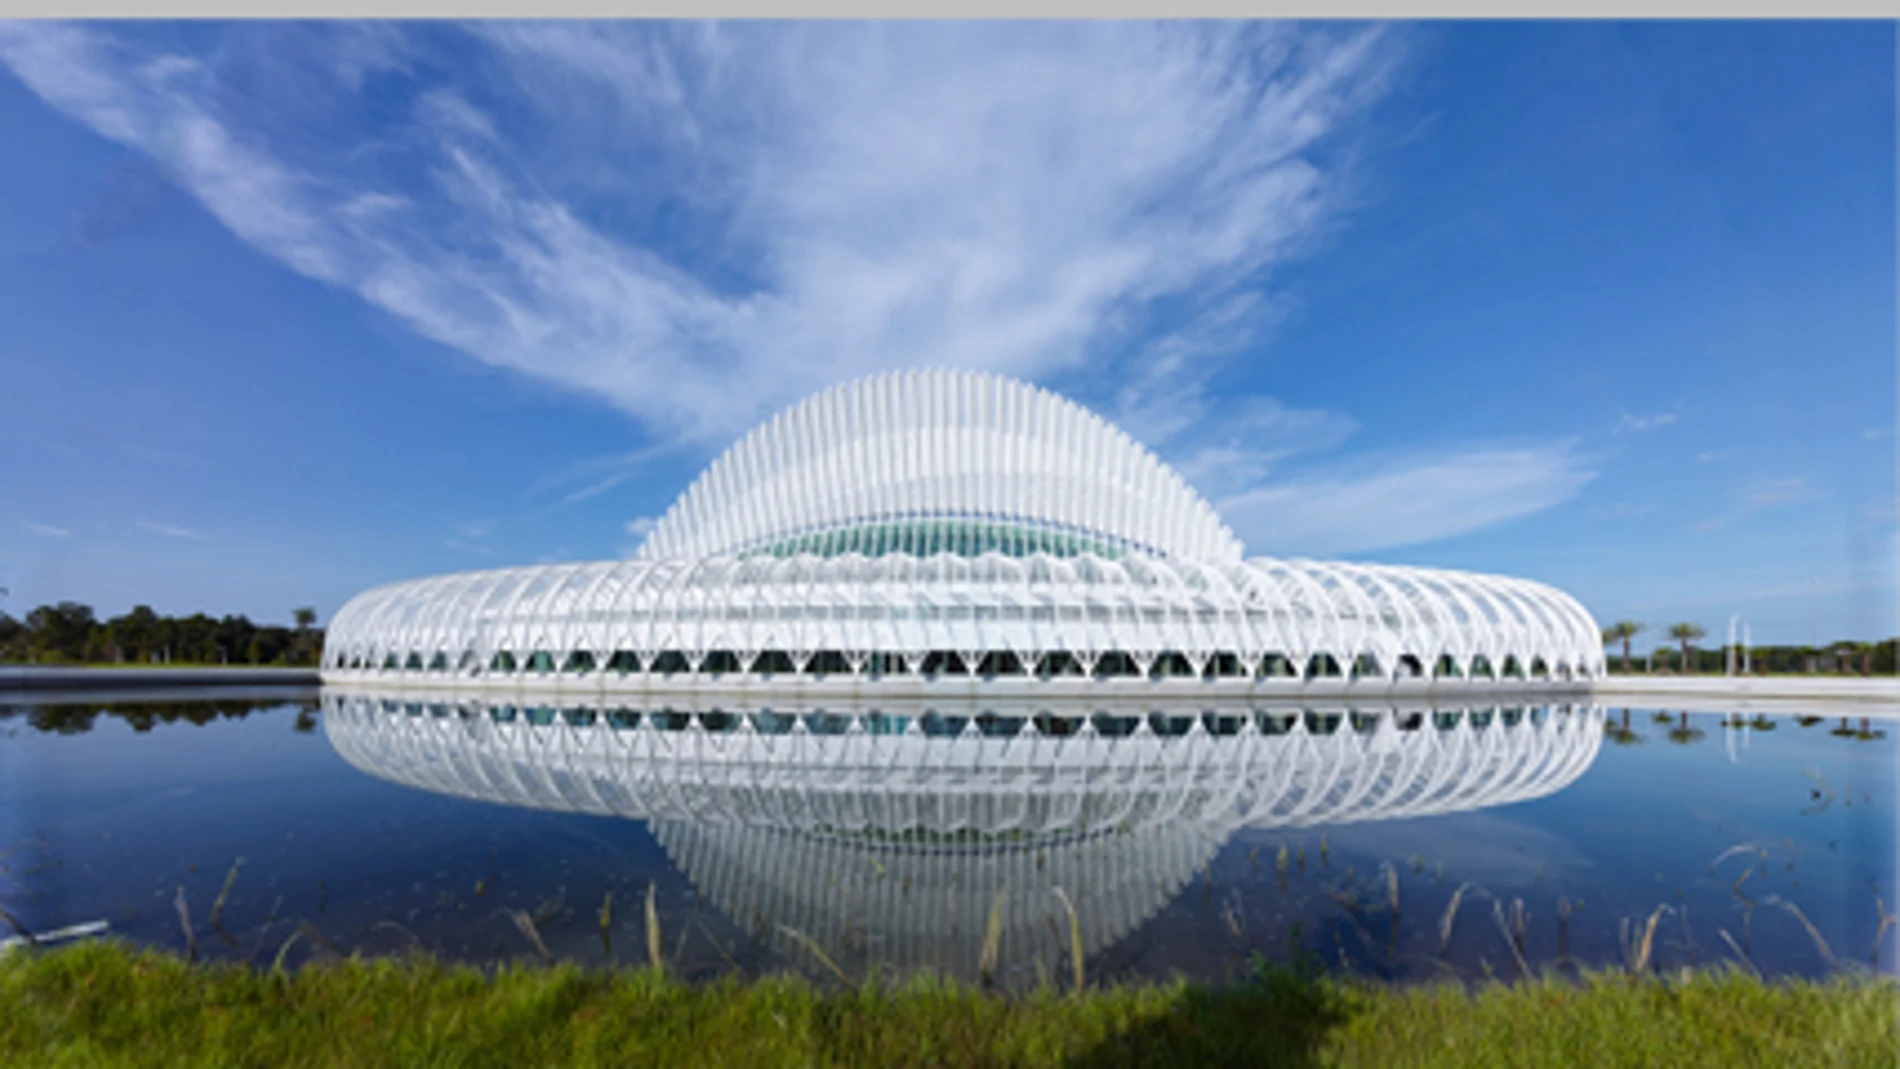 La Universidad Politécnica de Florida, de Calatrava, premio IDEAS 2015